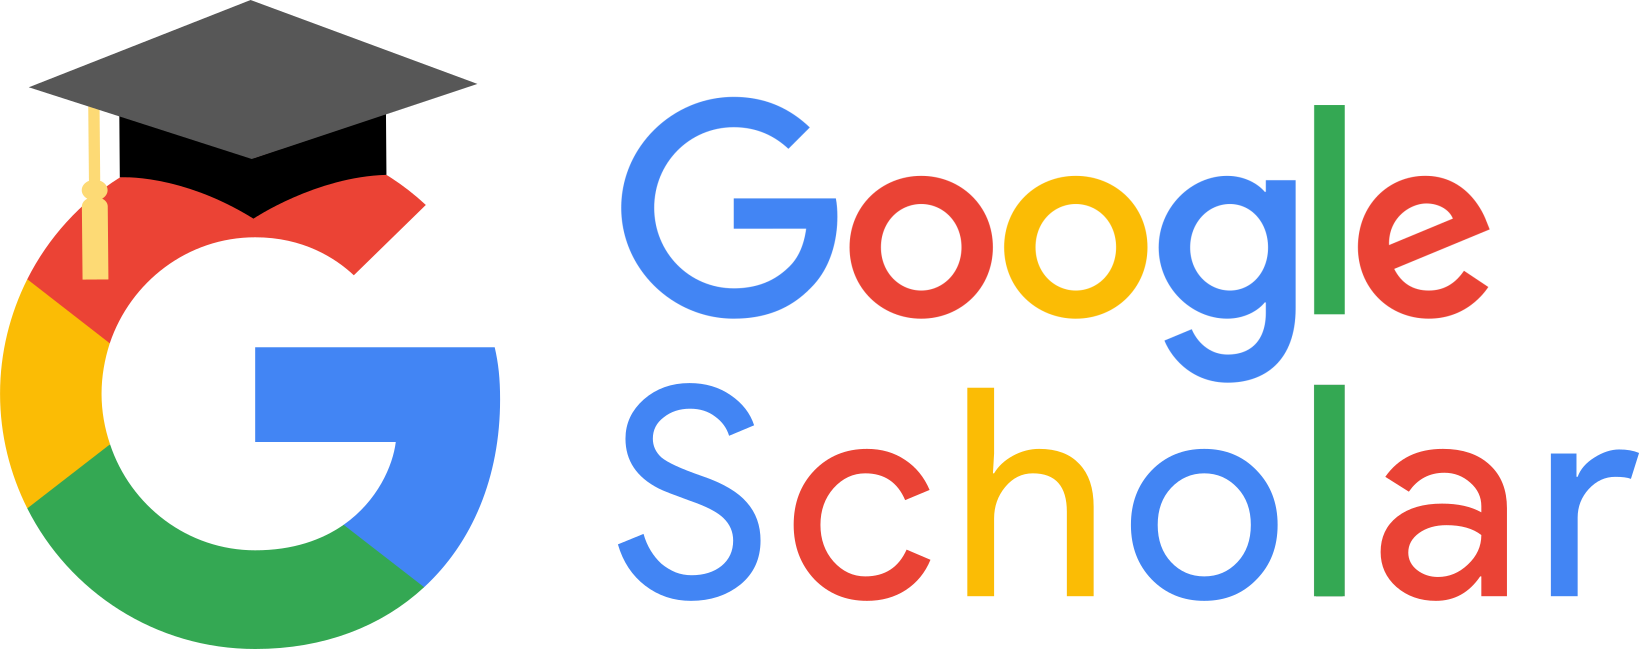 Search GoogleScholar